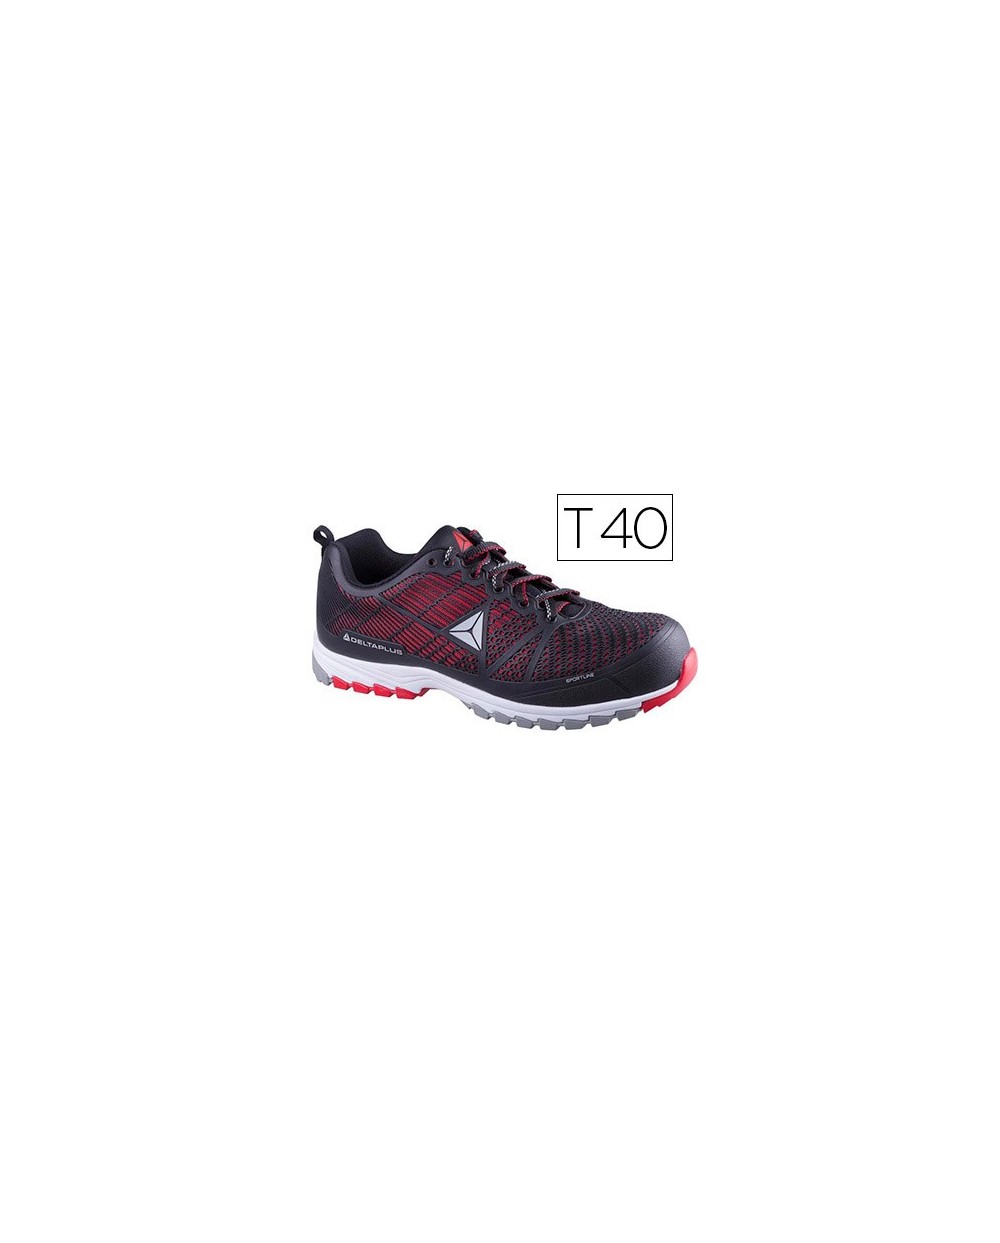 Zapatos de seguridad deltaplus de poliuretano y malla aireada s1p negro y rojo talla 40